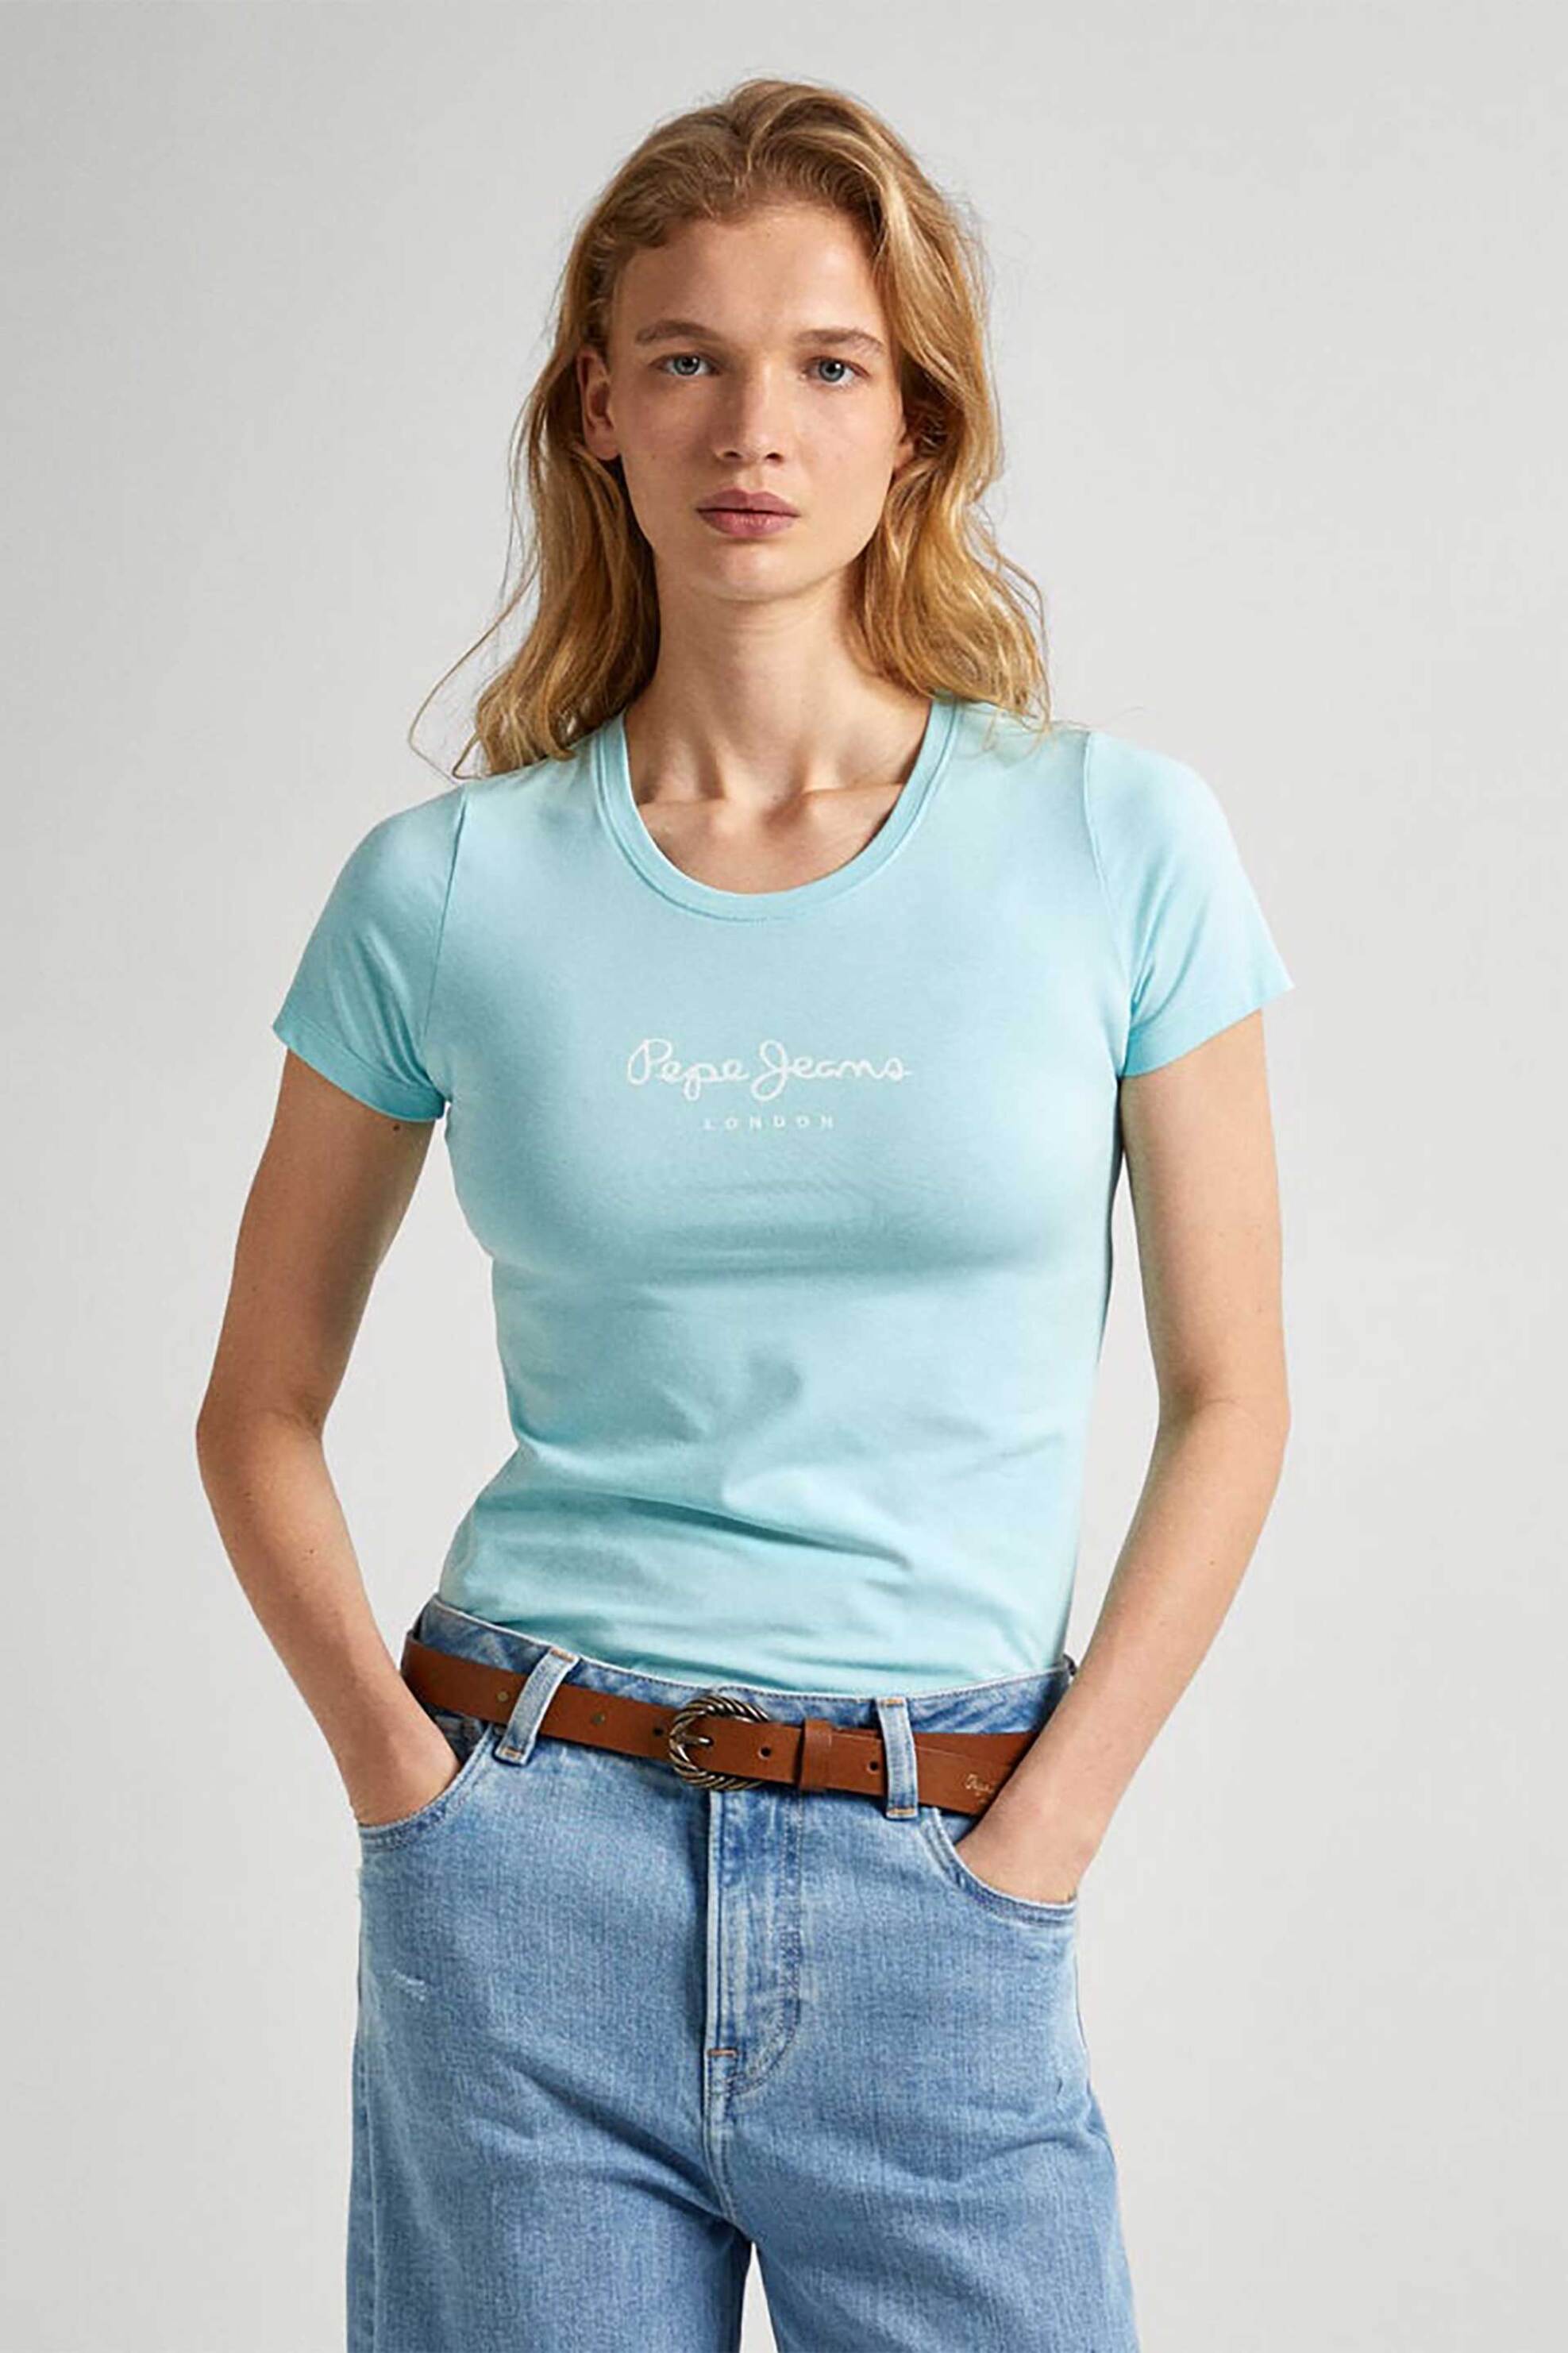 Γυναικεία Ρούχα & Αξεσουάρ > Γυναικεία Ρούχα > Γυναικεία Τοπ > Γυναικεία T-Shirts Pepe Jeans γυναικείο T-shirt μονόχρωμο με logo print - PL505202 Τυρκουάζ